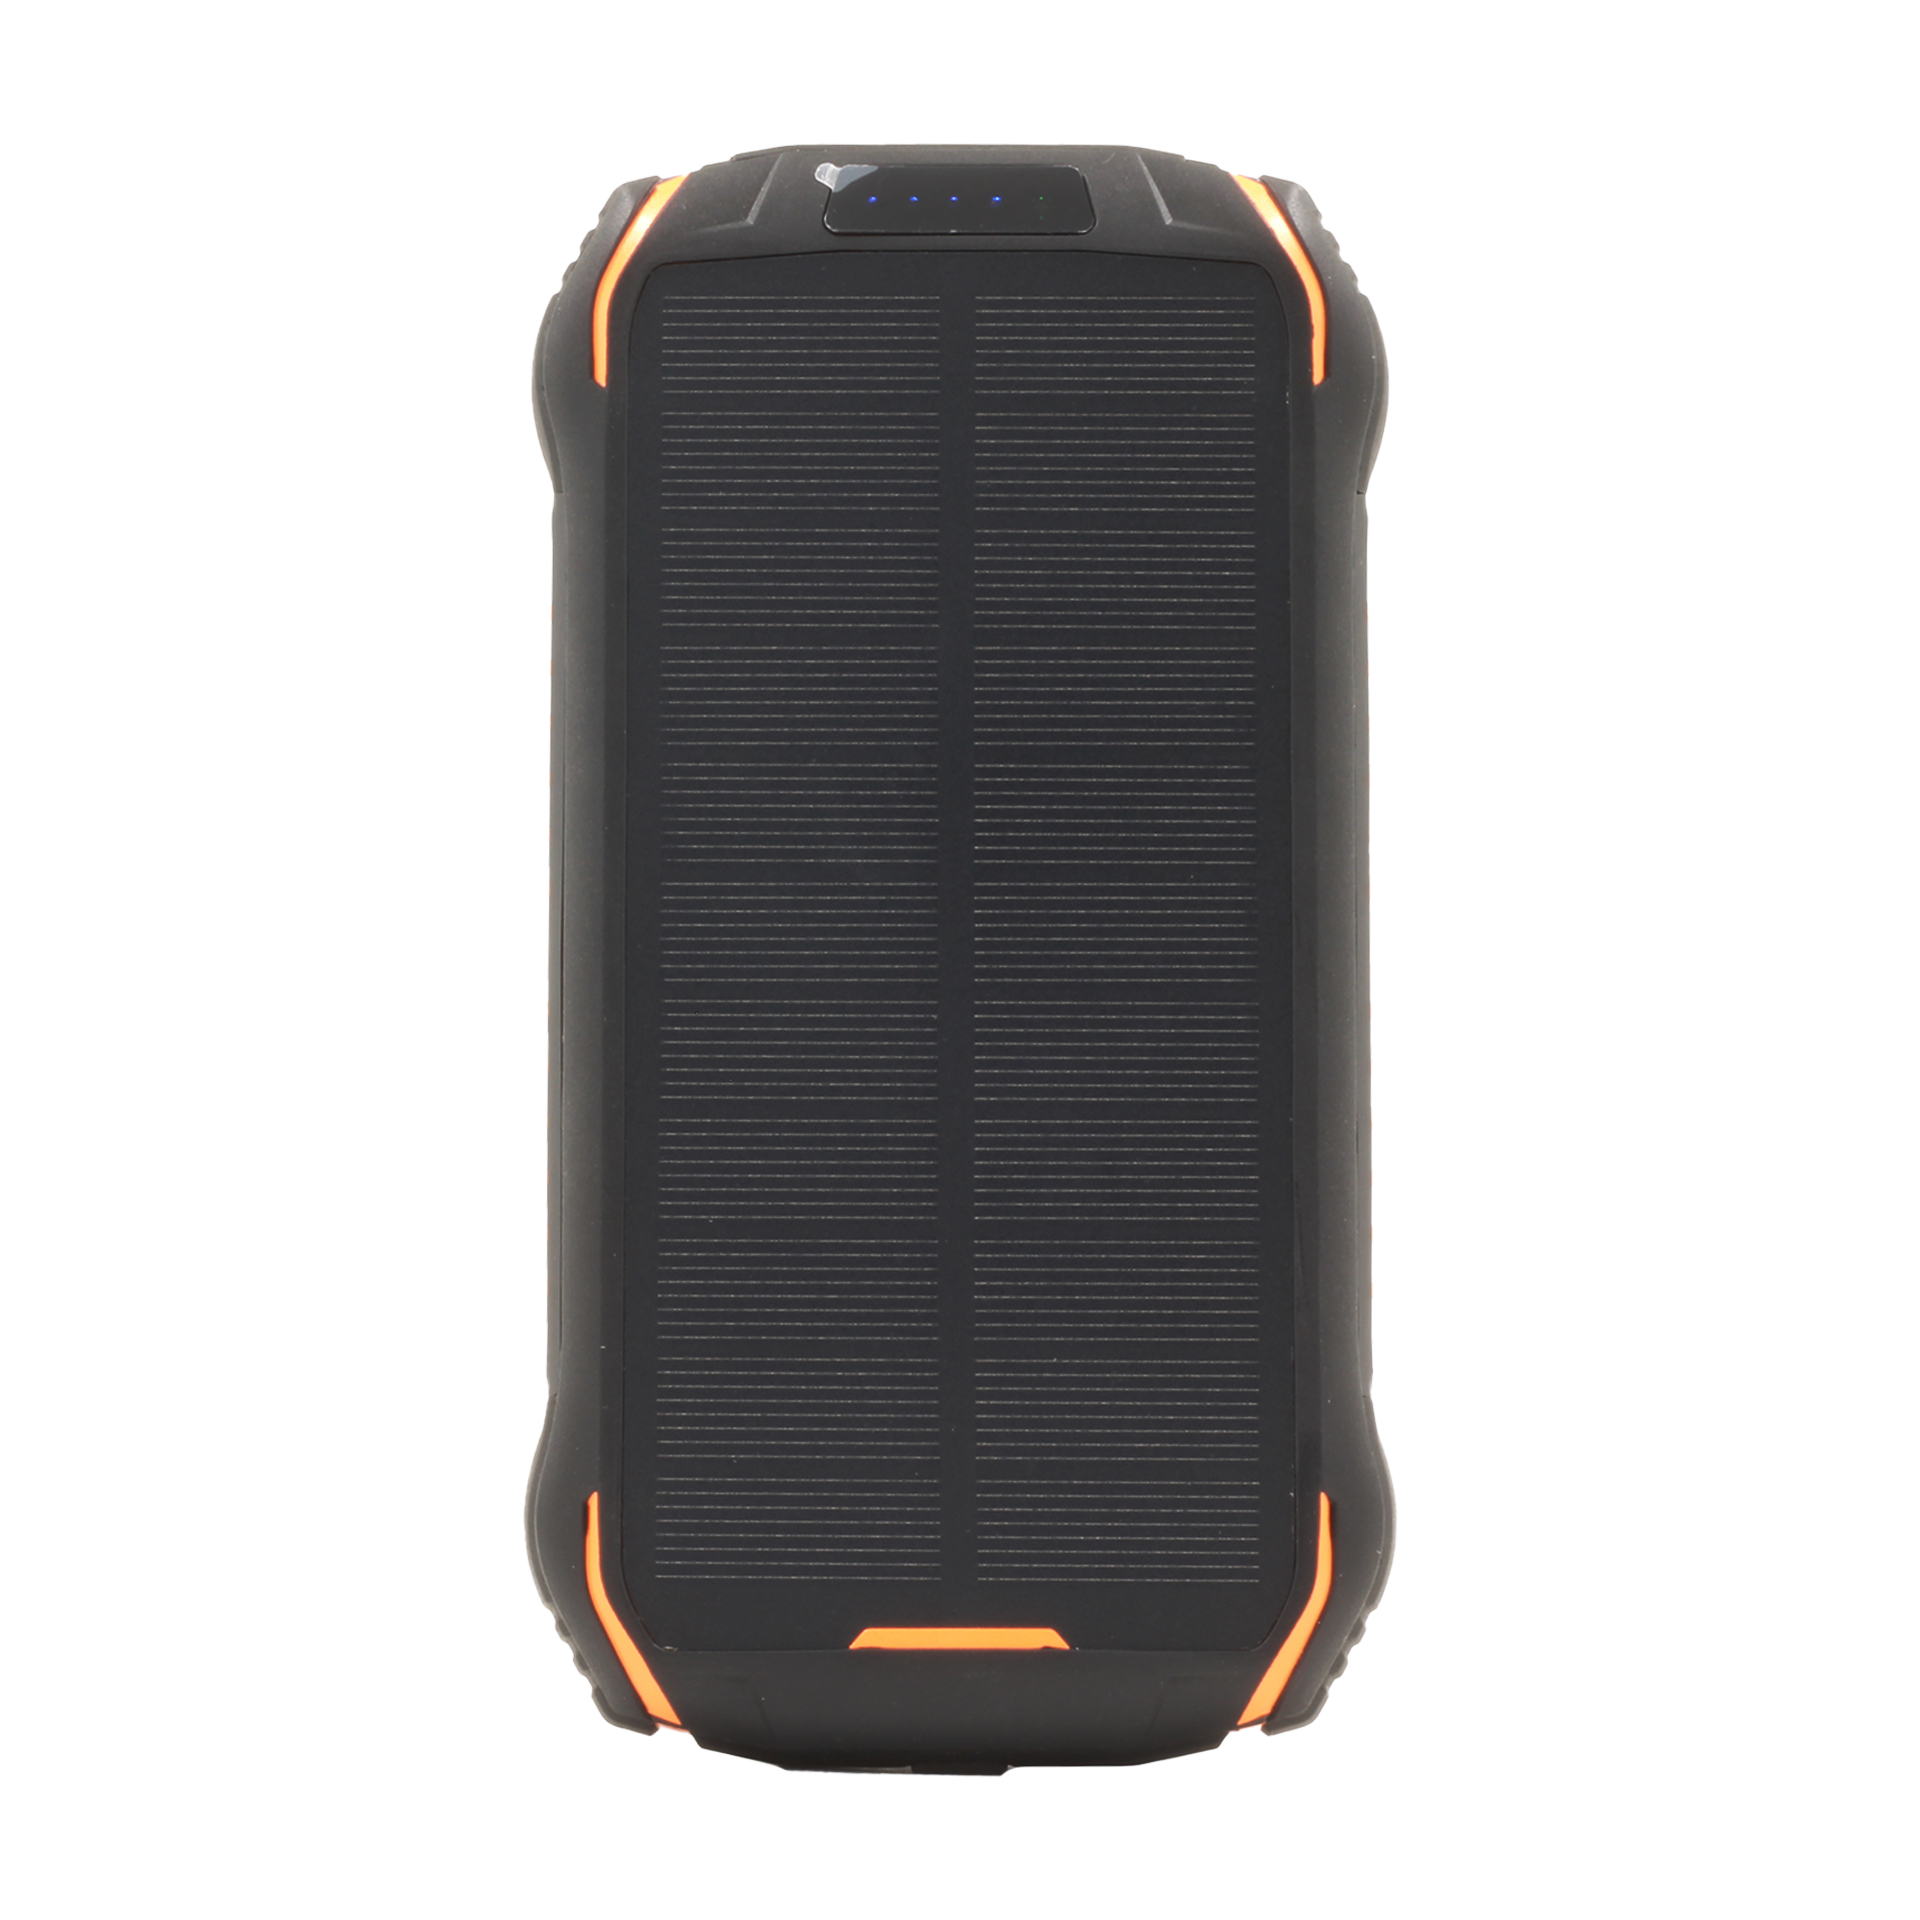 نکته خرید - قیمت روز شارژر همراه خورشیدی مدل i26 Wireless ظرفیت 26800 میلی آمپر خرید